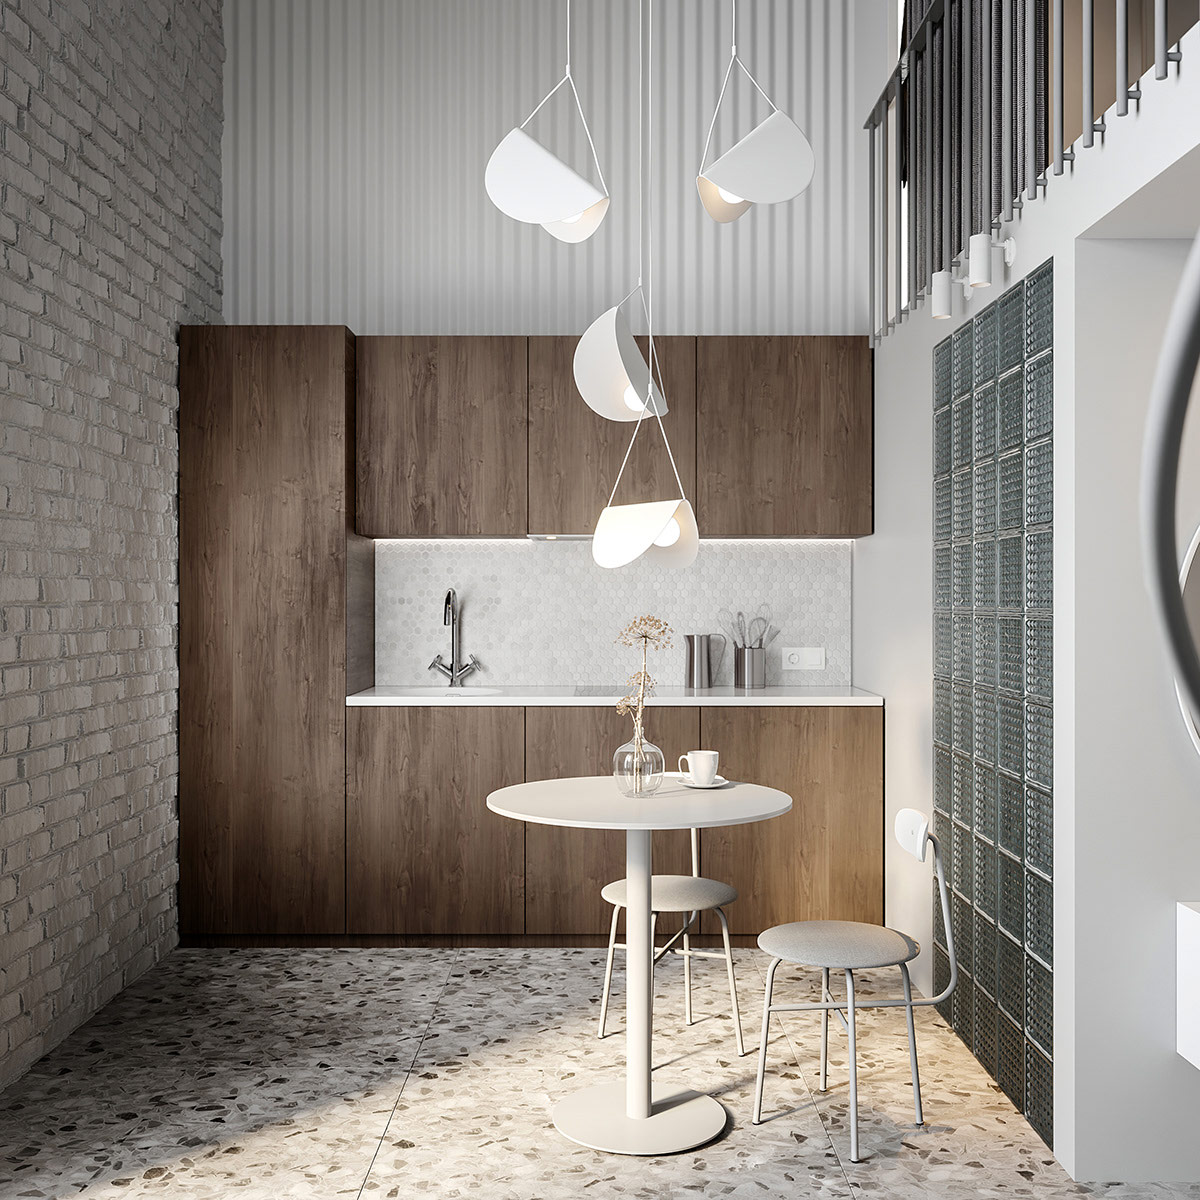 hình ảnh phòng bếp ăn căn hộ nhỏ với tủ bếp bằng gỗ, bàn ăn tròn, đèn thả 